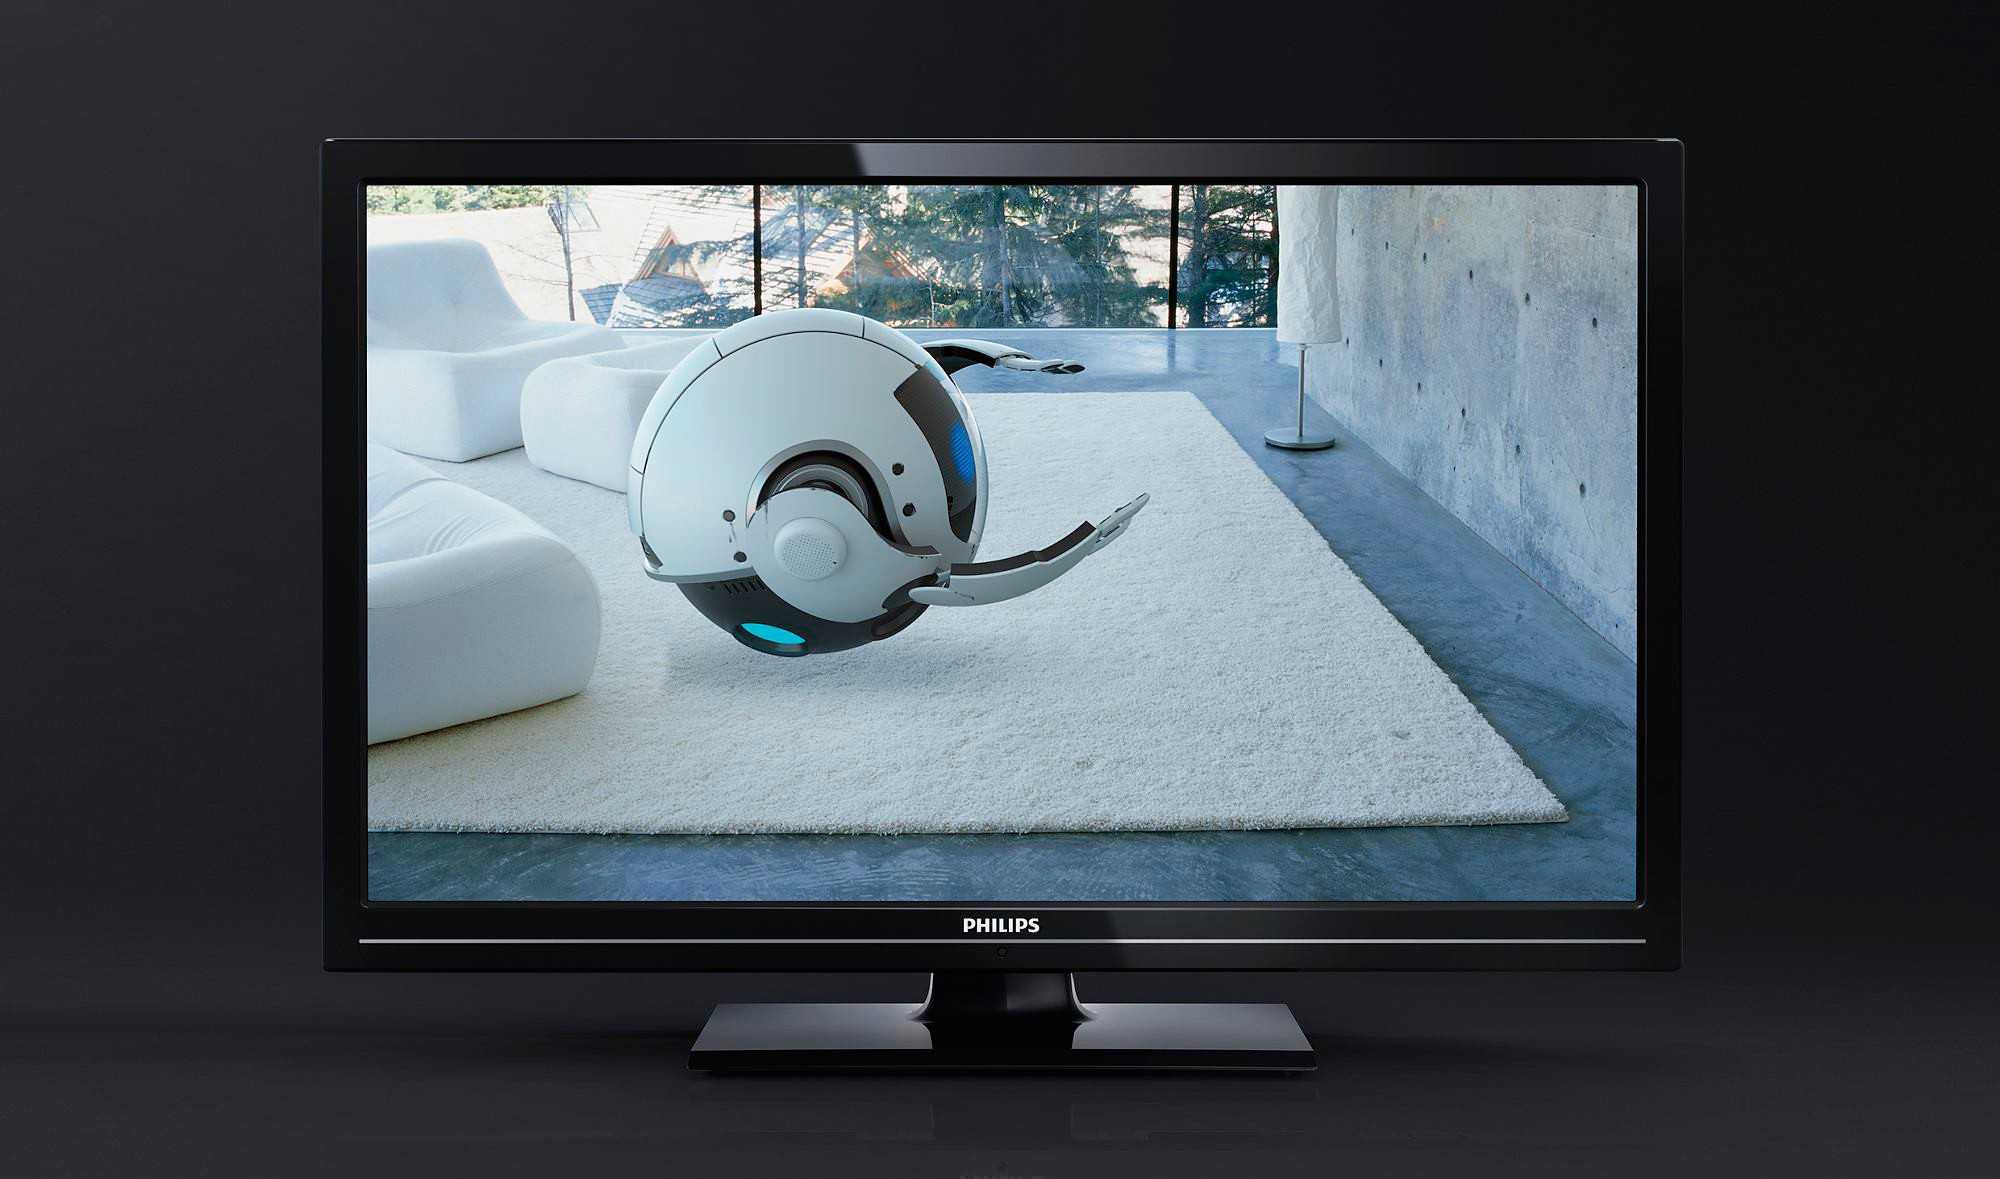 Телевизор Philips 19PFL2908H - подробные характеристики обзоры видео фото Цены в интернет-магазинах где можно купить телевизор Philips 19PFL2908H